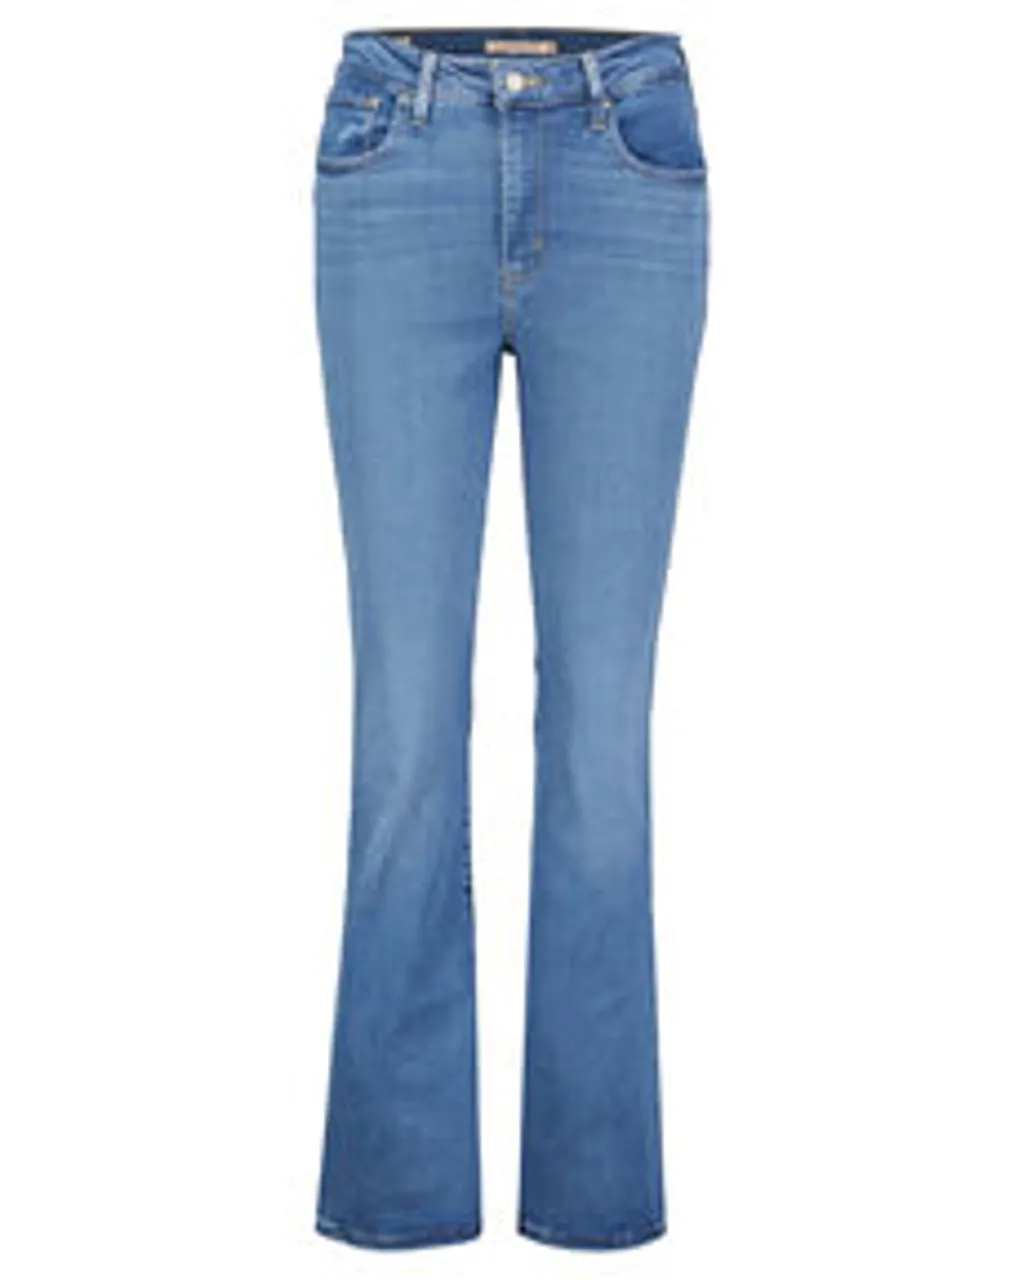 Damen Jeans 725 HIGH RISE BOOTCUT RIO RAVE Super Skinny